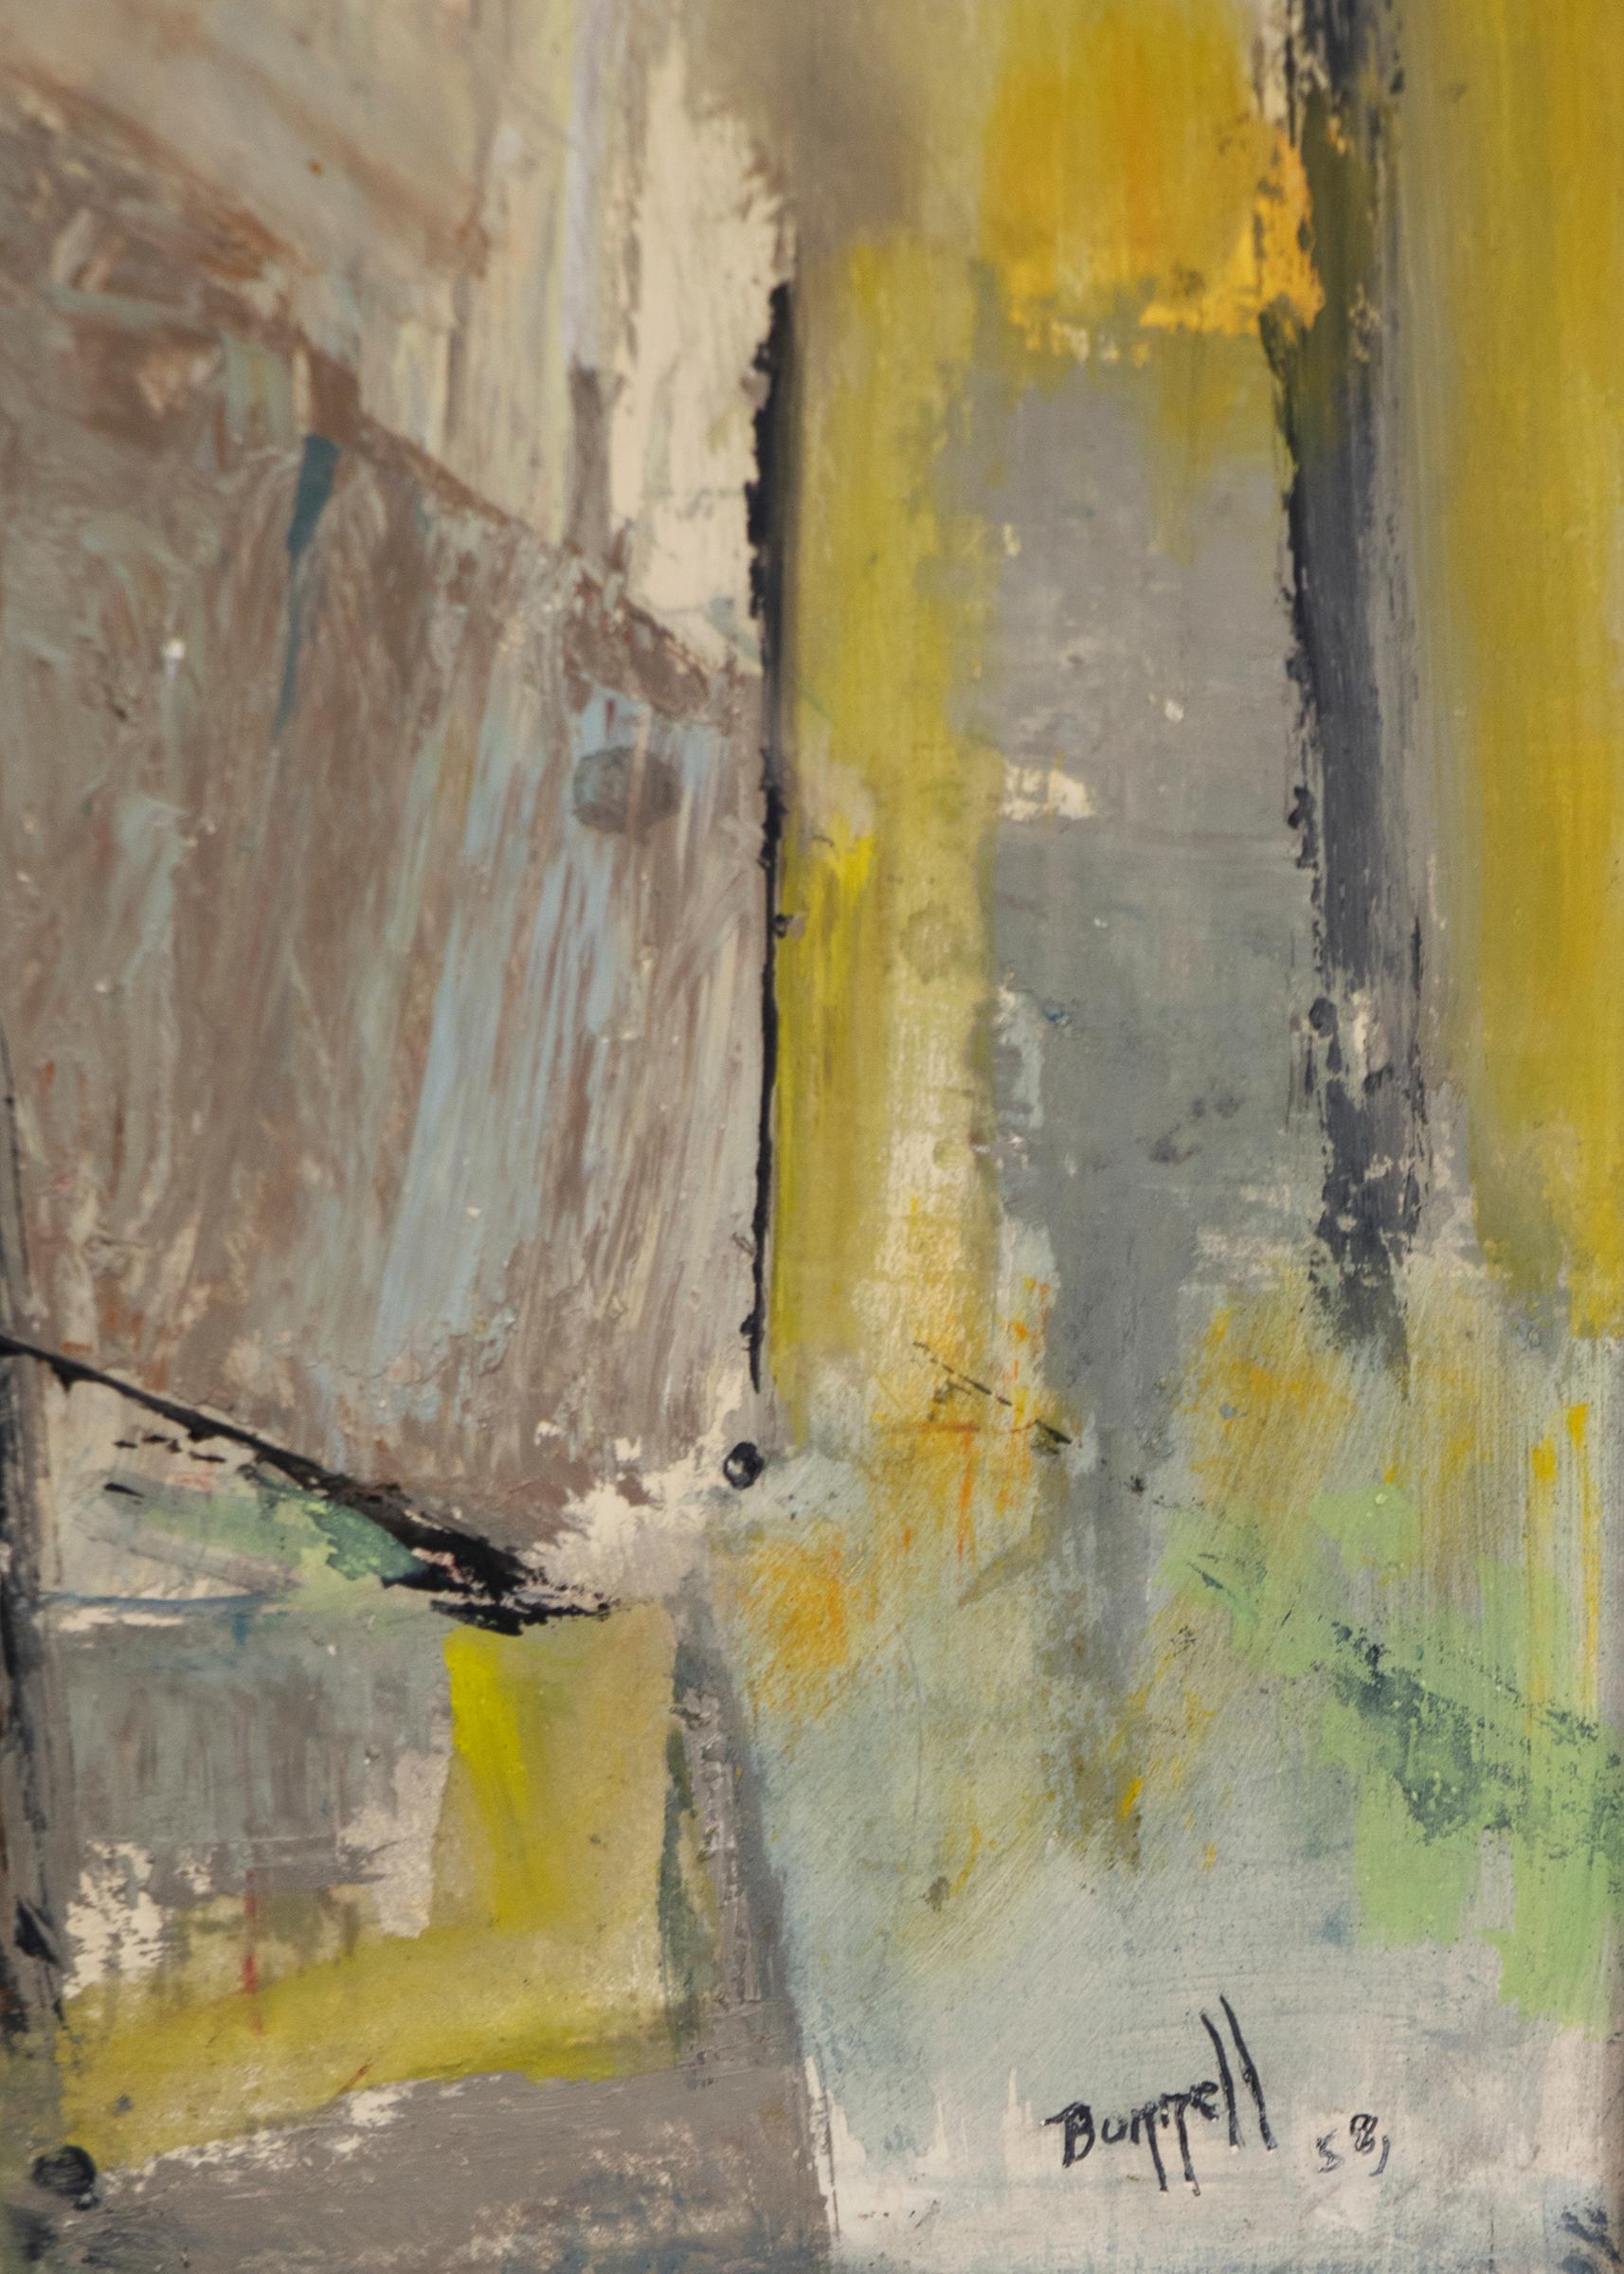 Abstrakt-expressionistische Komposition aus den 1950er Jahren, Ölgemälde aus der Mitte des Jahrhunderts, Blau-Gelb  (Abstrakter Expressionismus), Painting, von Charles Ragland Bunnell